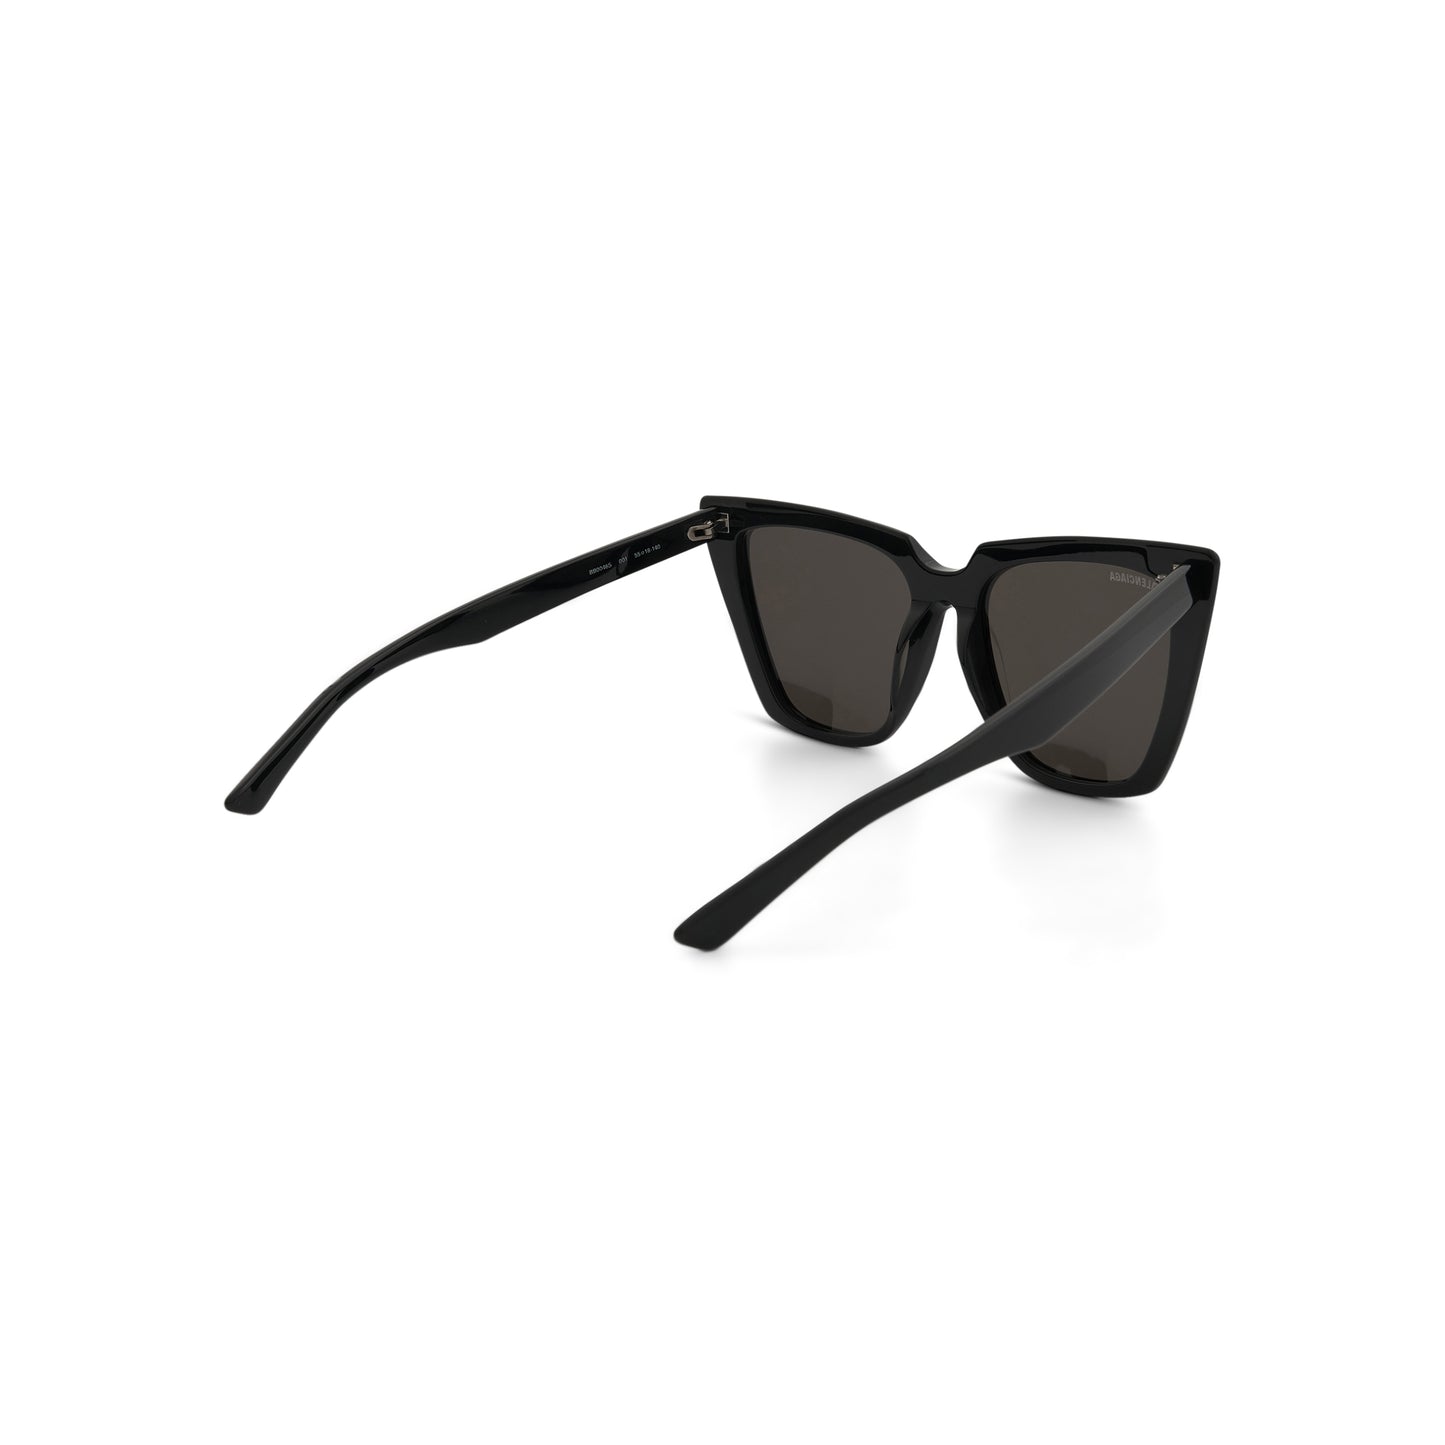 Tip Cat 0046S Sunglasses in Black